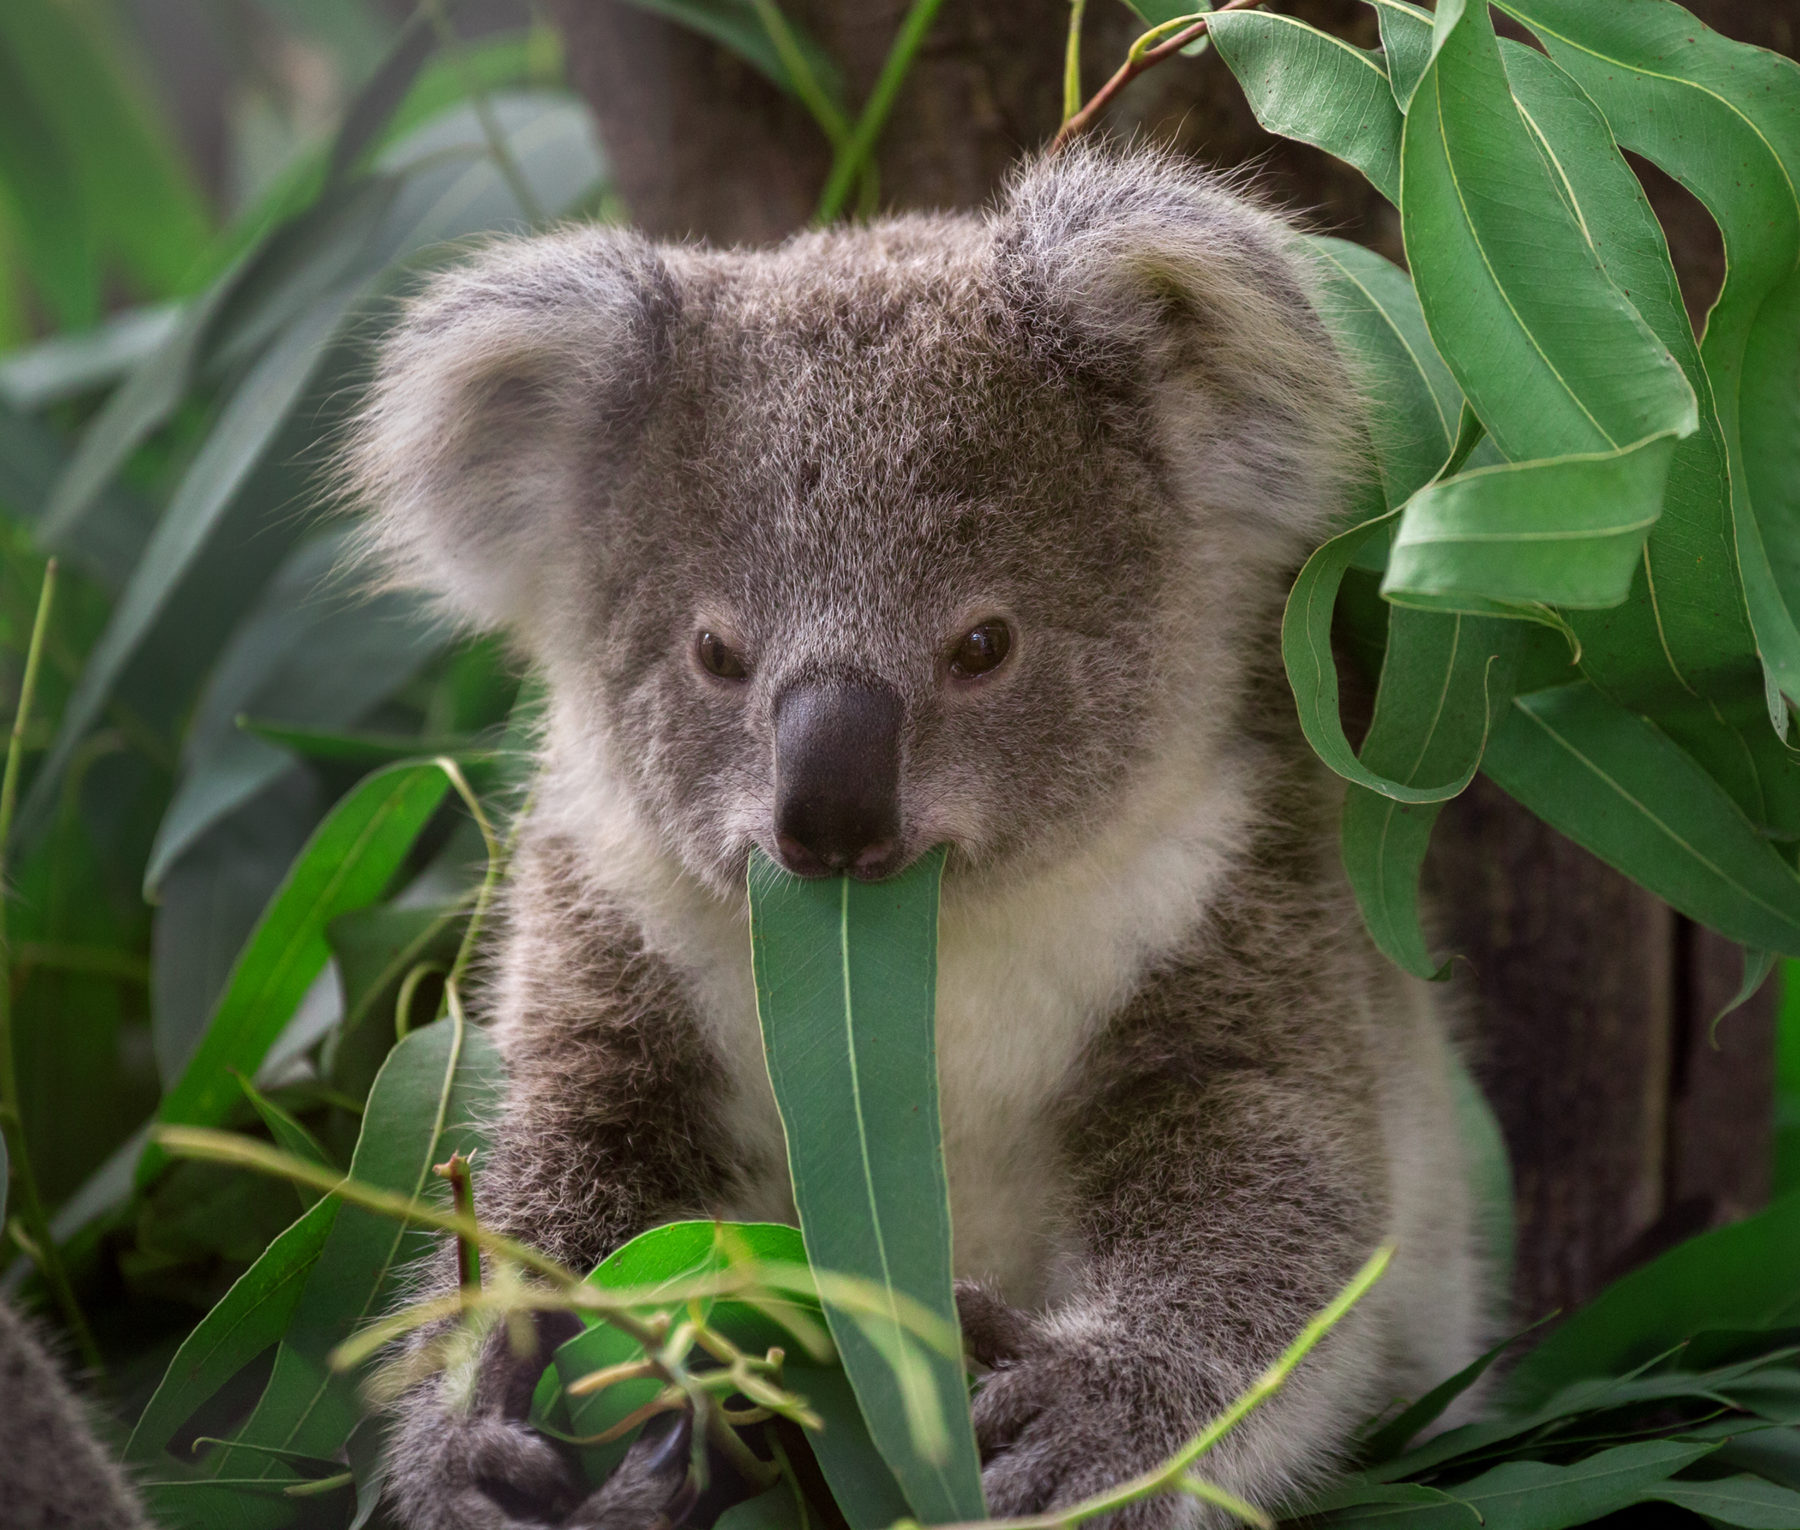 do koalas travel in groups